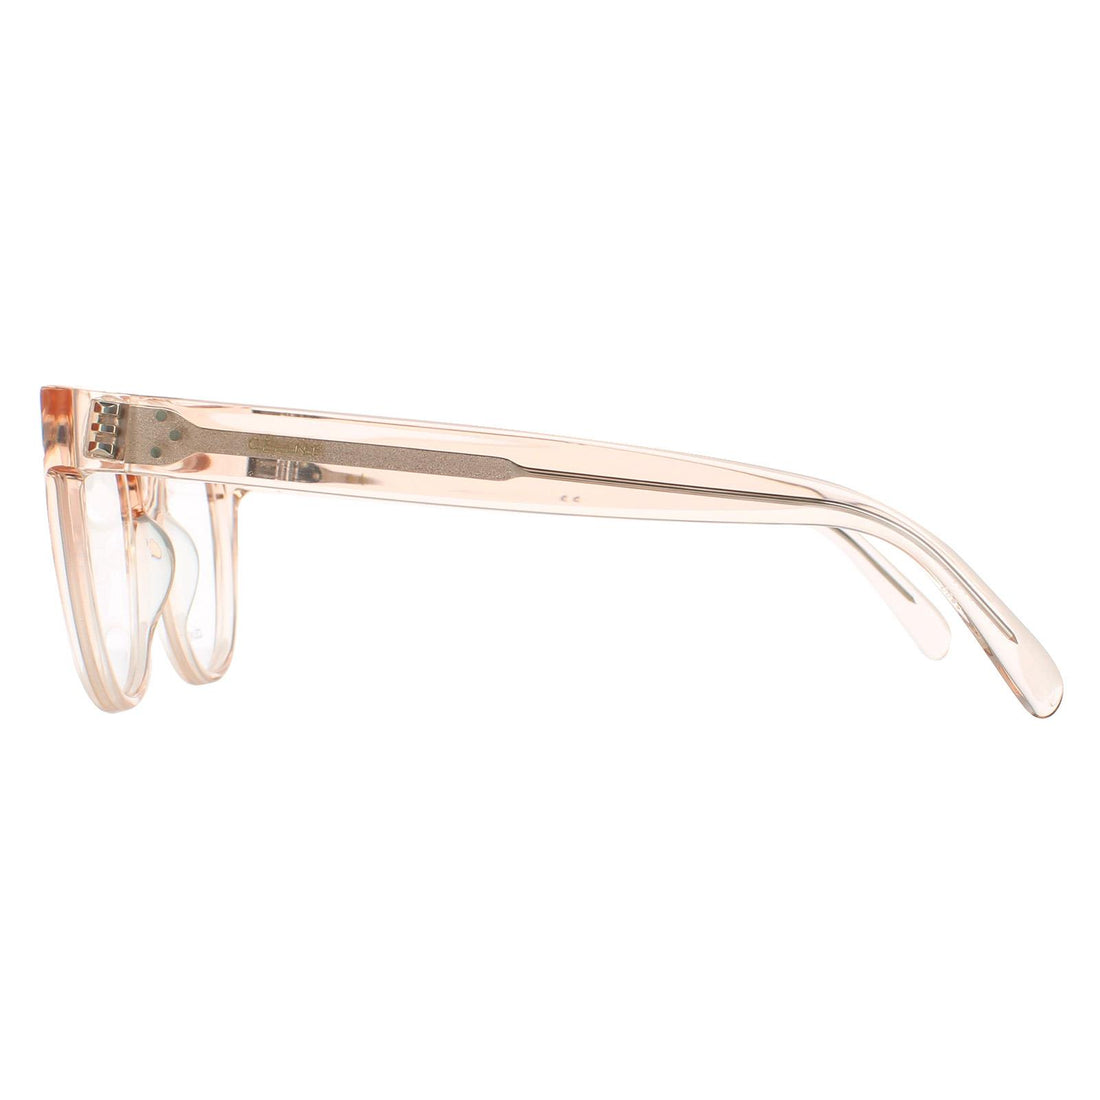 Celine CL50019I Glasses Frames